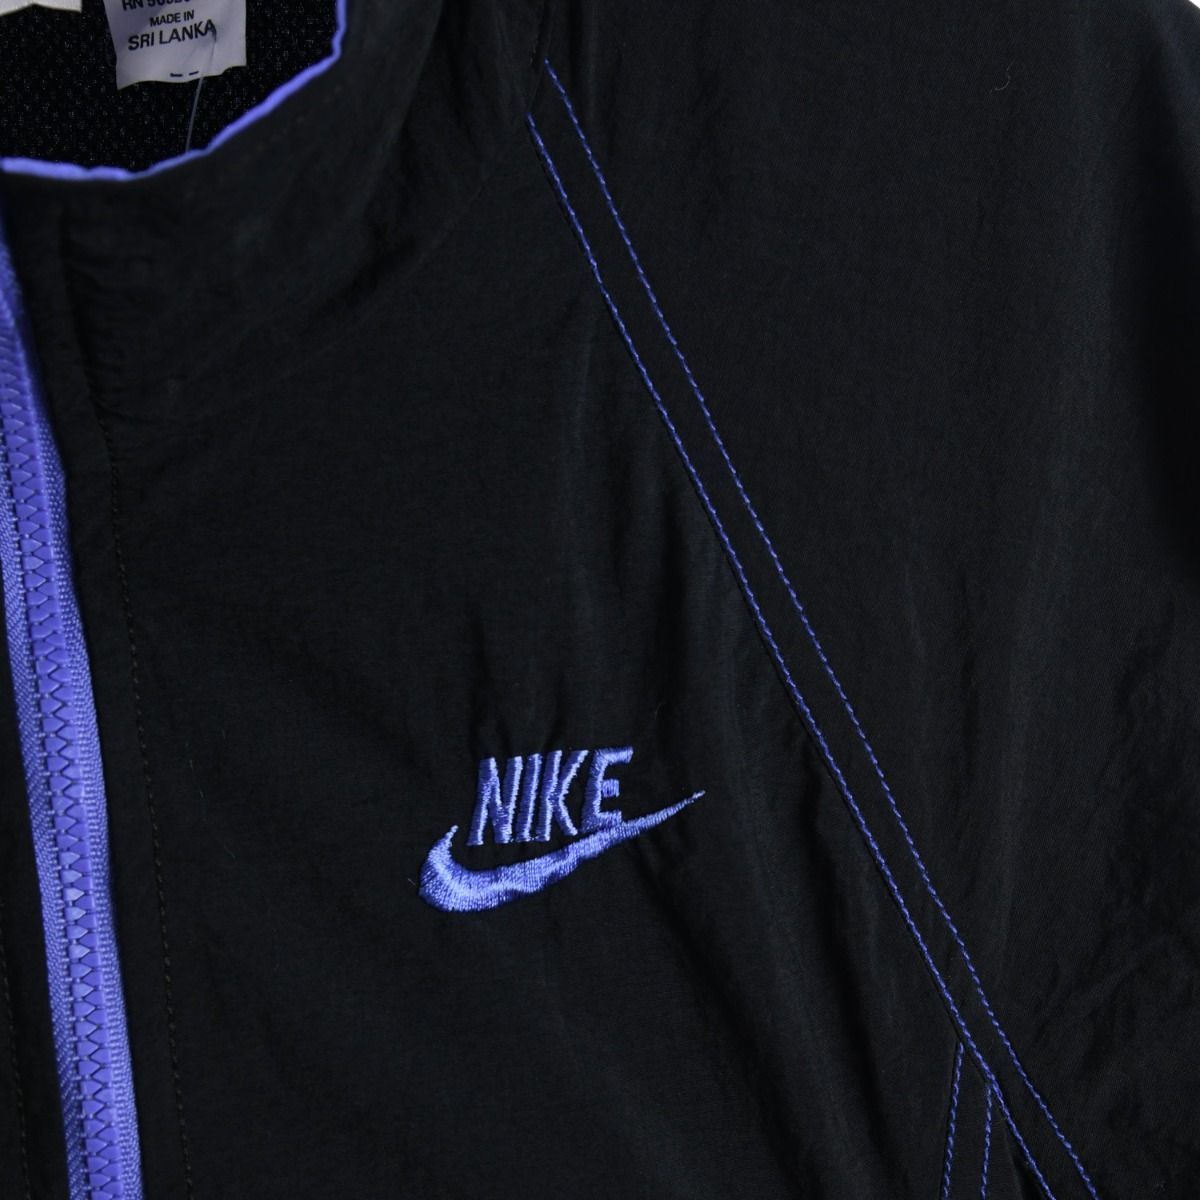 Nike 1990s Track Jacket